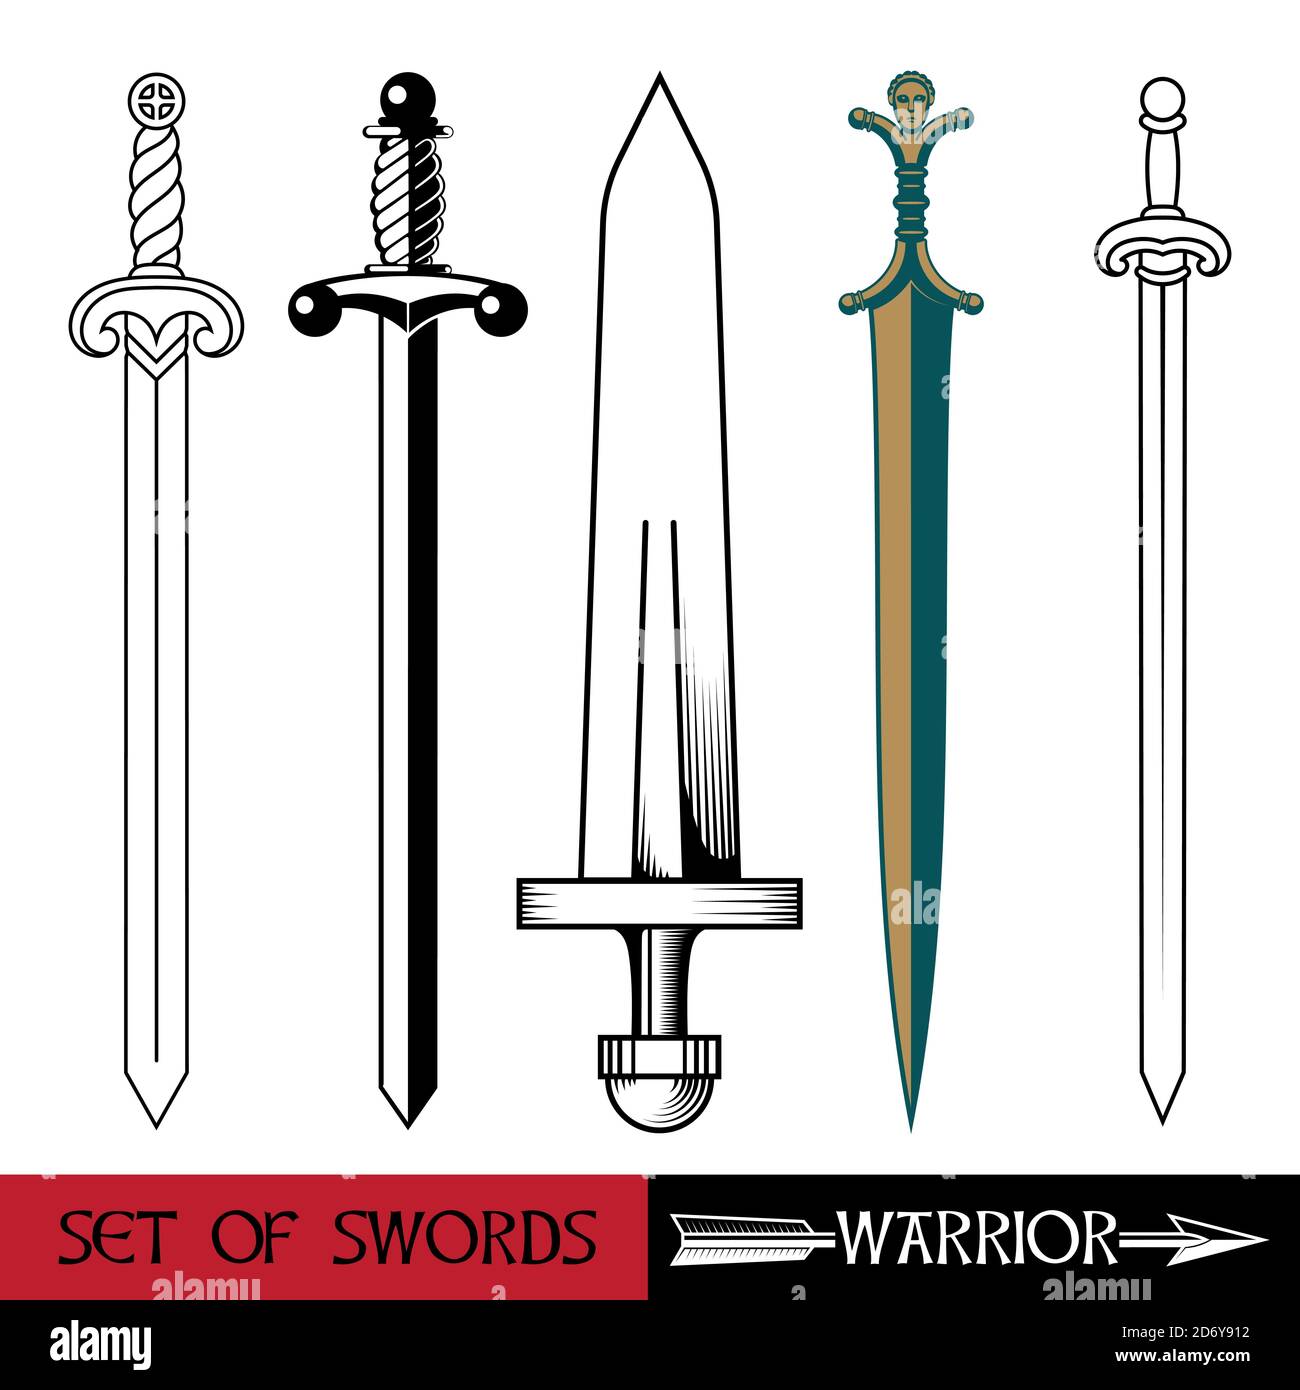 Arma dell'Europa antica - insieme di spade. Spada Vikings, cavalieri di spada, crociati, spada celtica Illustrazione Vettoriale